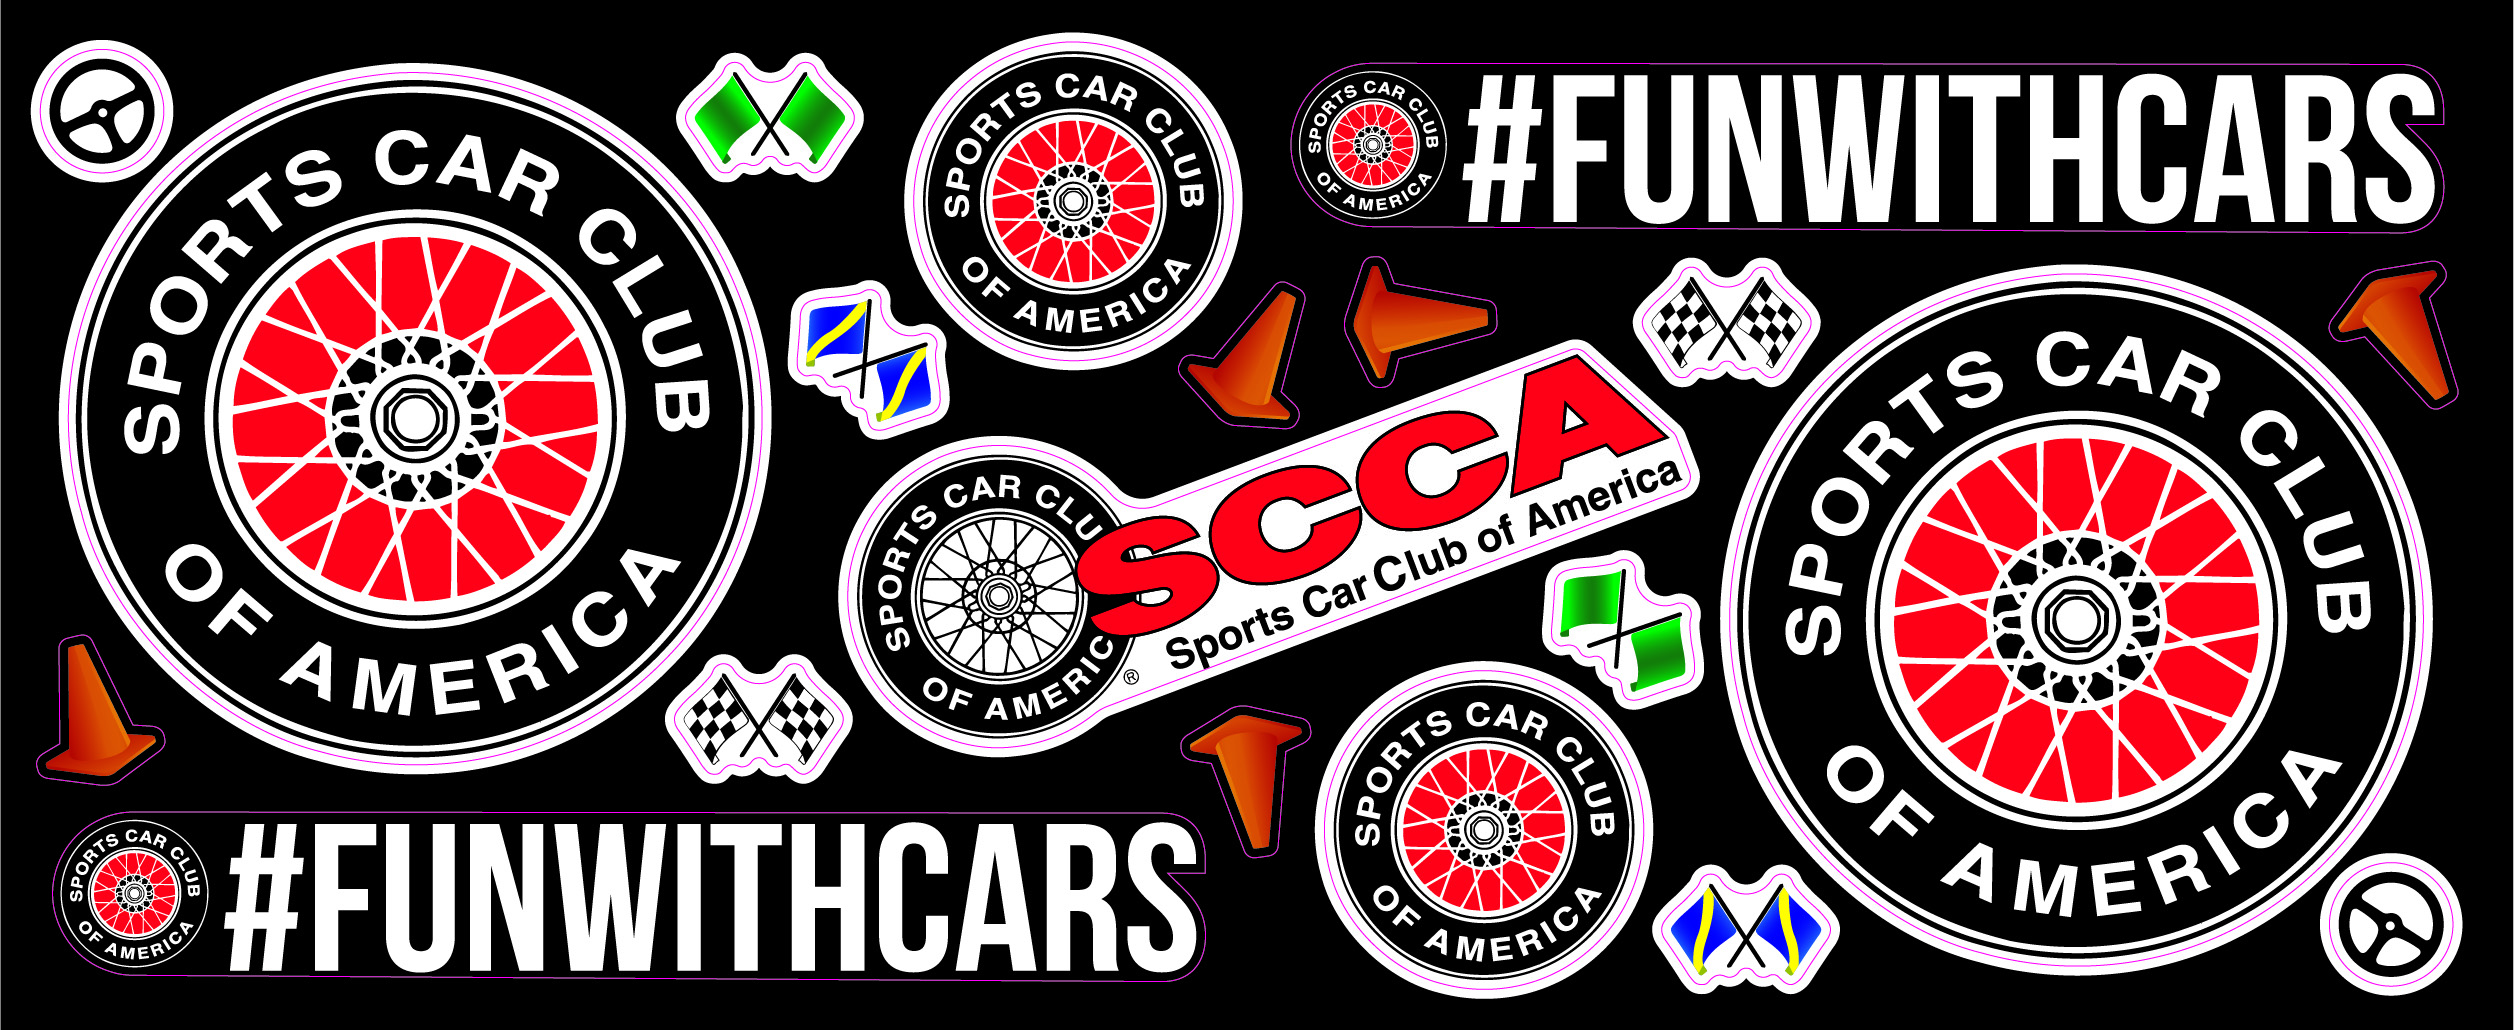 SCCA Sports Car Club of America sticker decal 4" x 4"